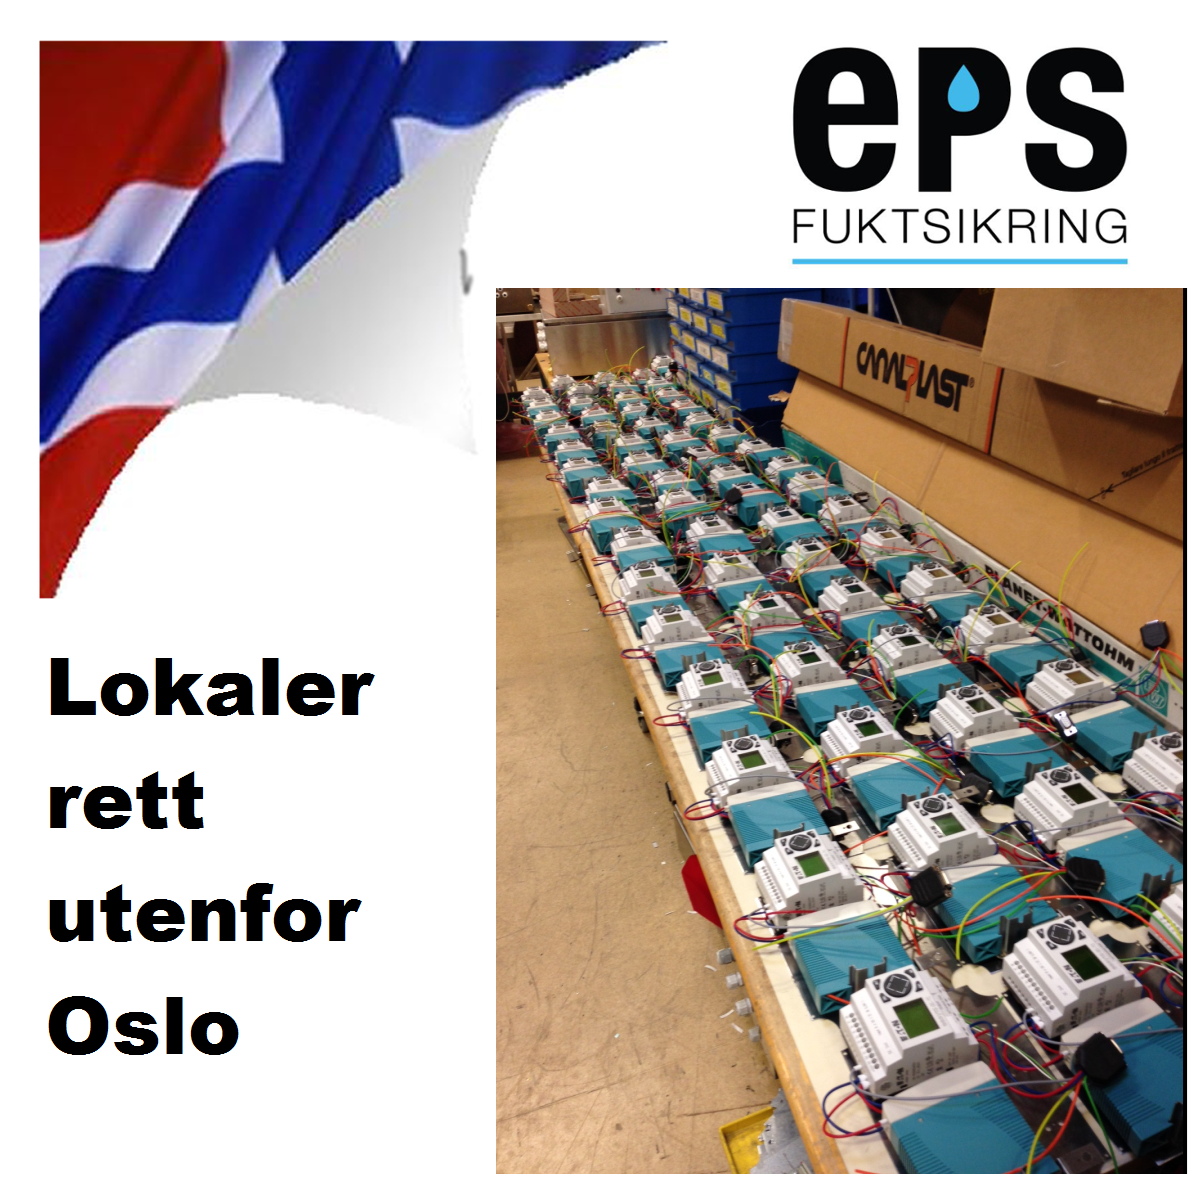 EPS-fuktsikring, Et norsk utviklet system for fuktsikring uten graving - prod.png - EPS-System